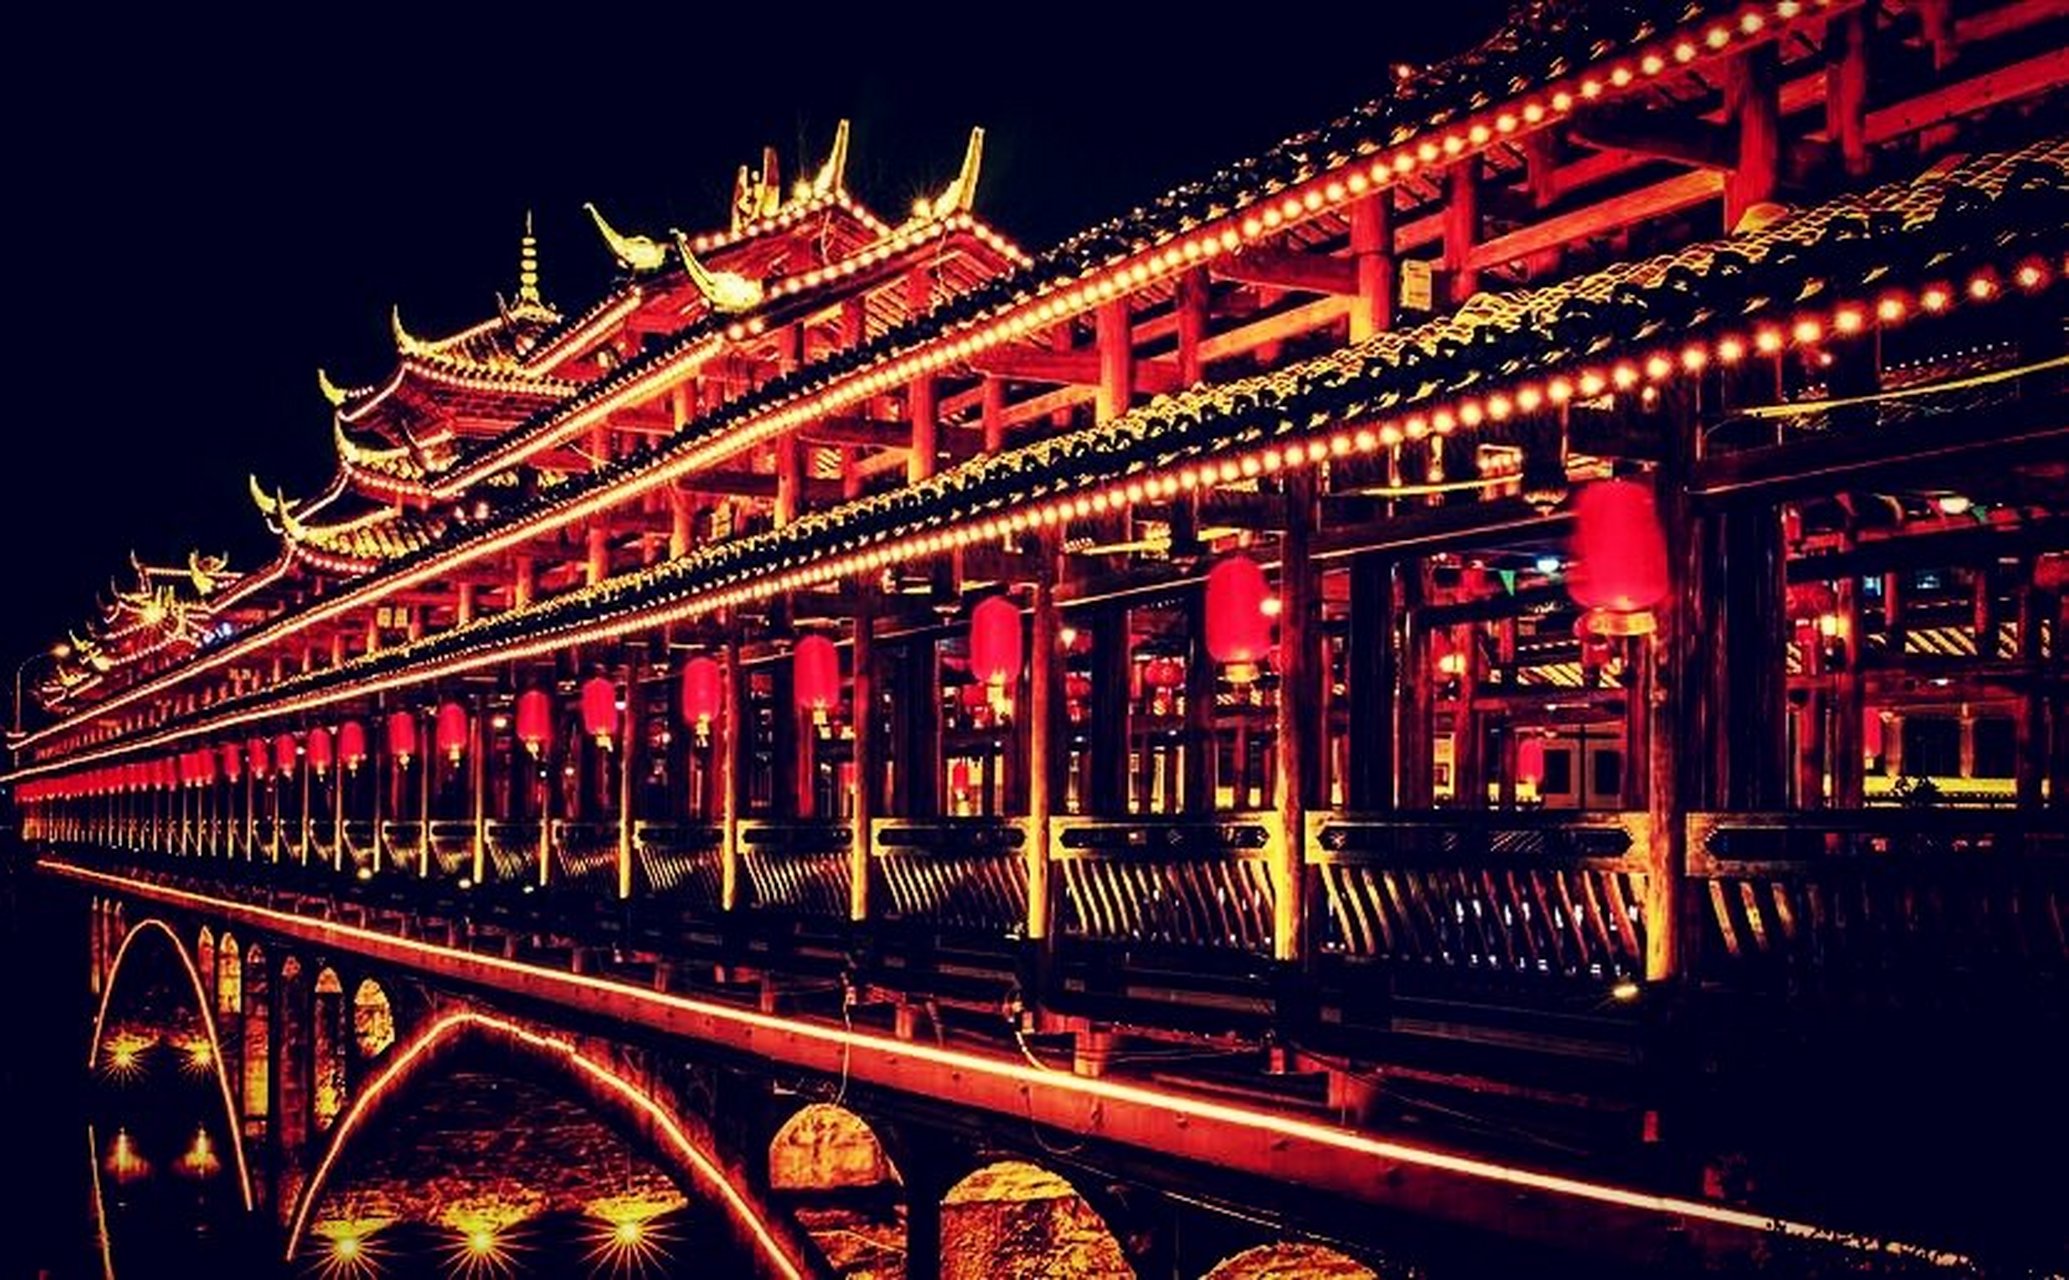 城步荣昌桥是巫水河上第一座大桥,建于清朝光绪年间(1875年),由城步籍